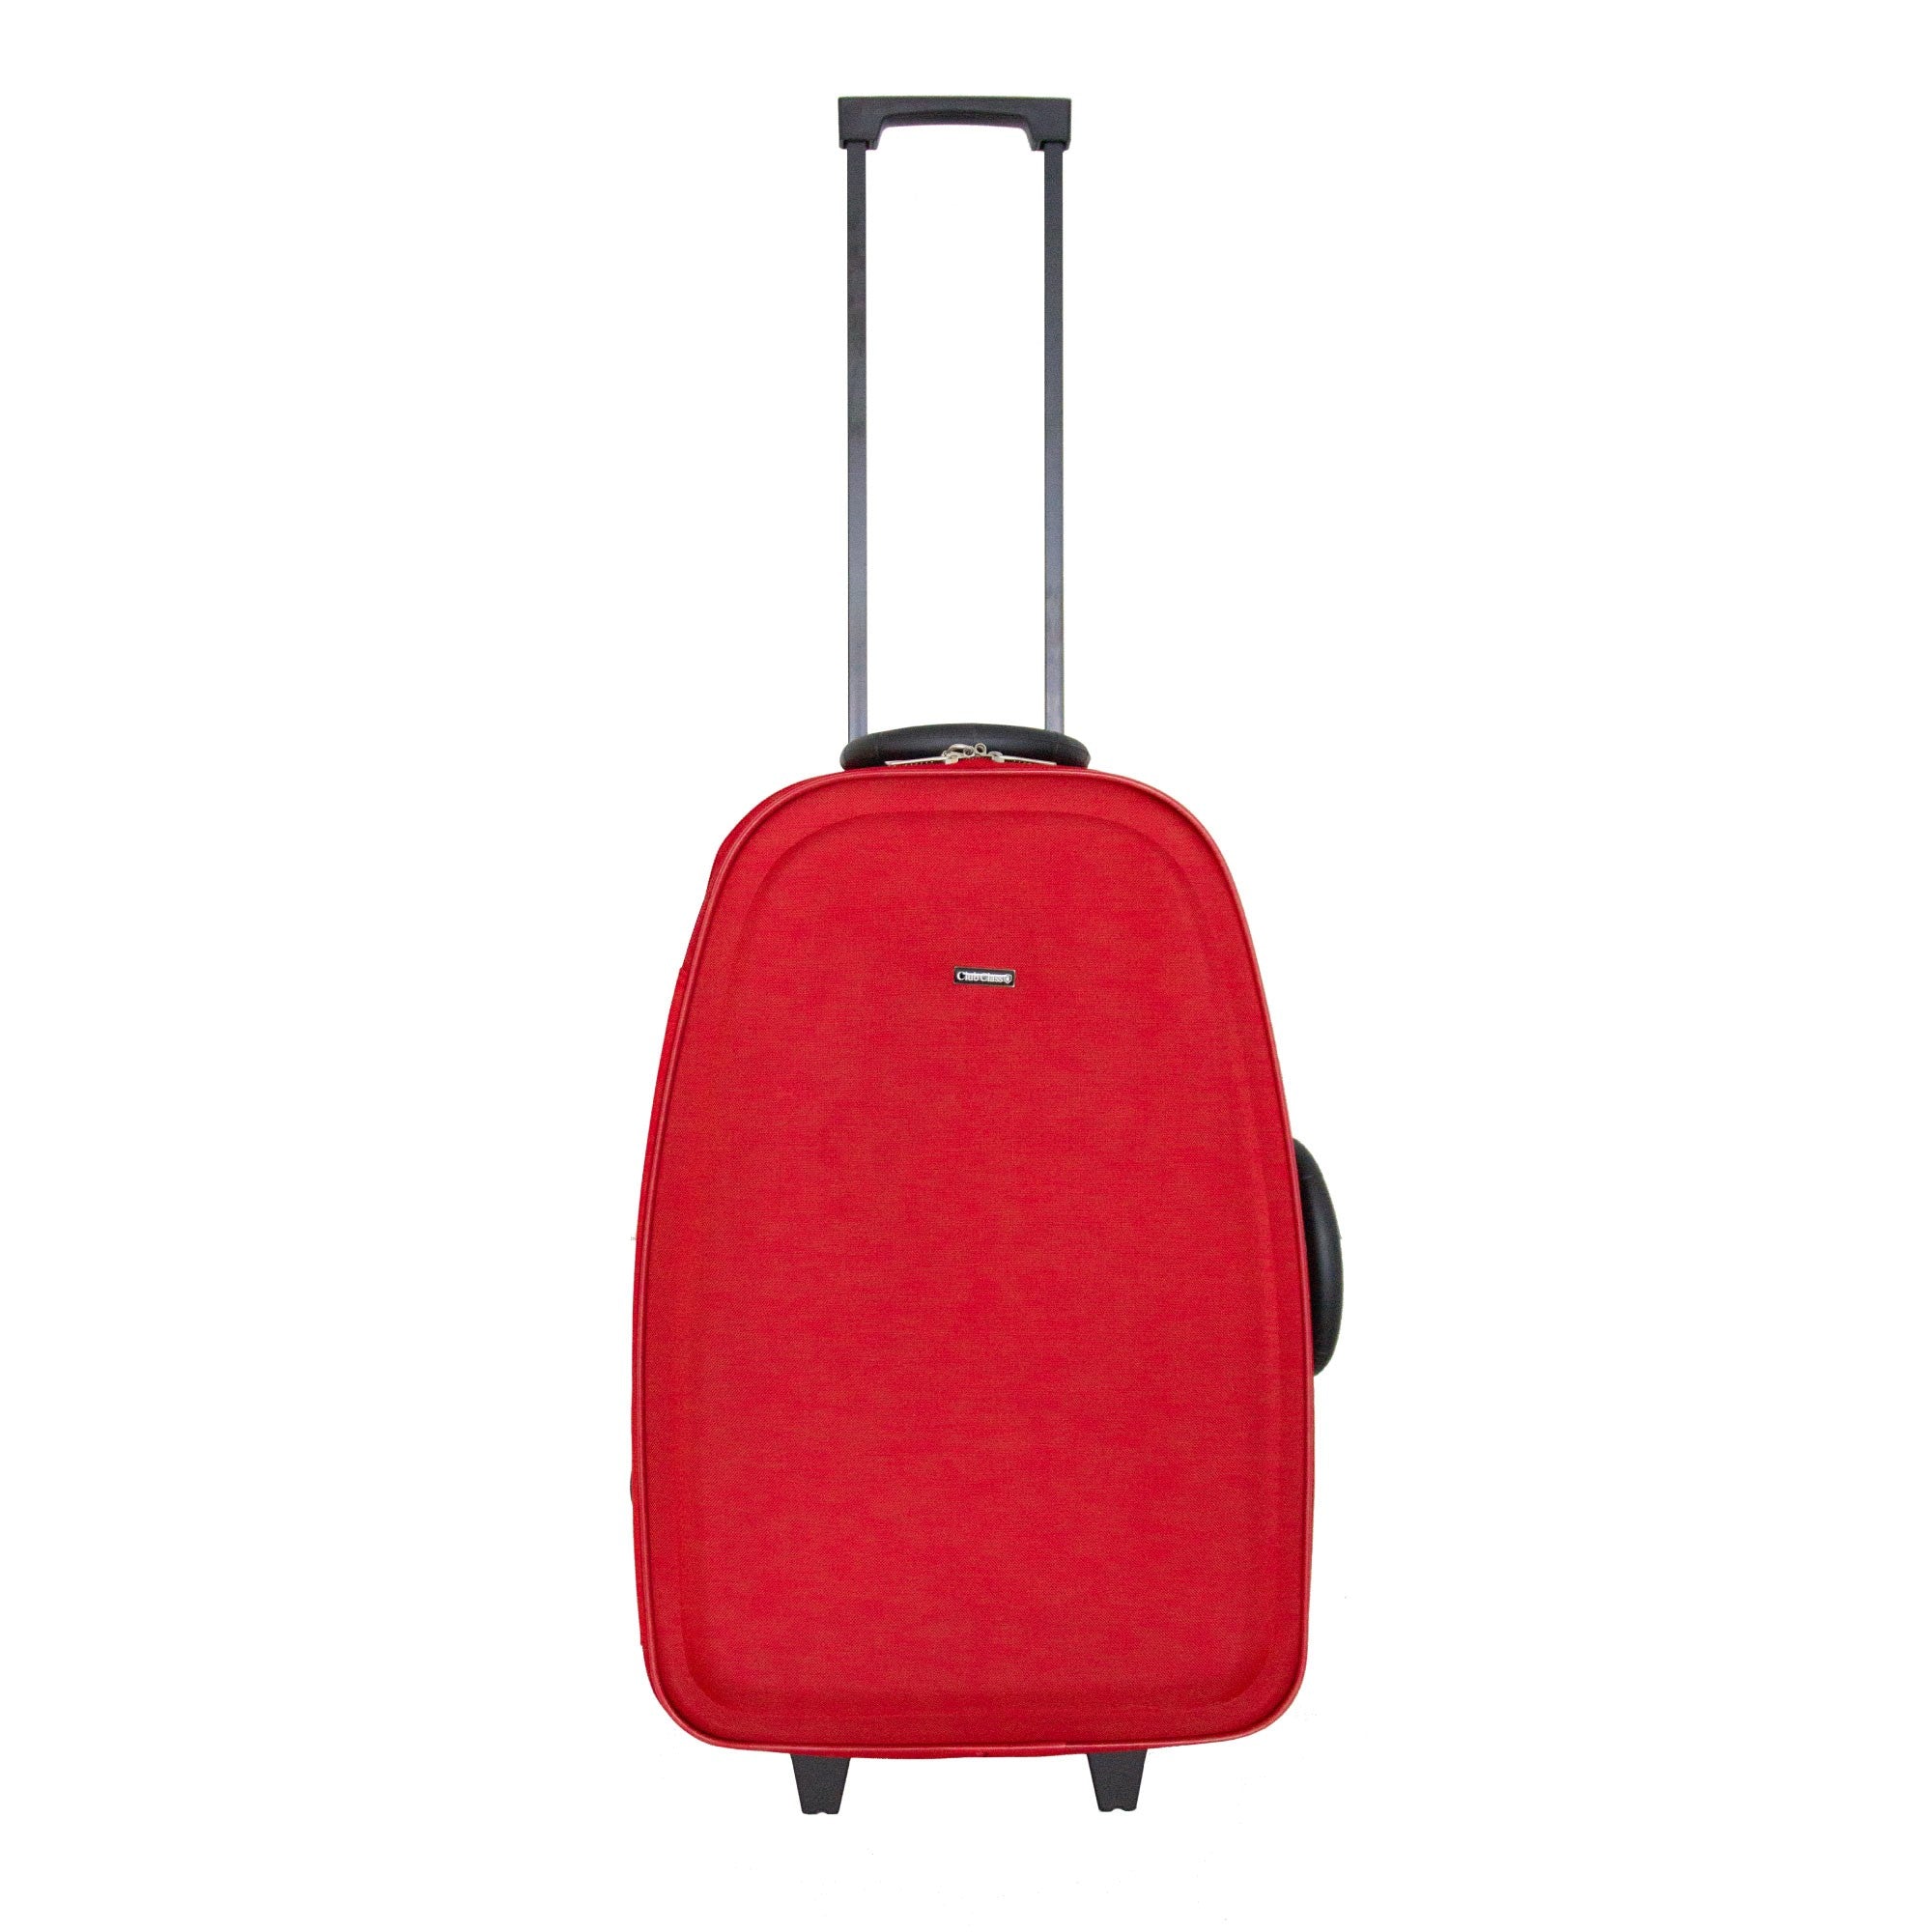 Club Class Luggage 600D EVA Suitcase - Red - Medium  | TJ Hughes